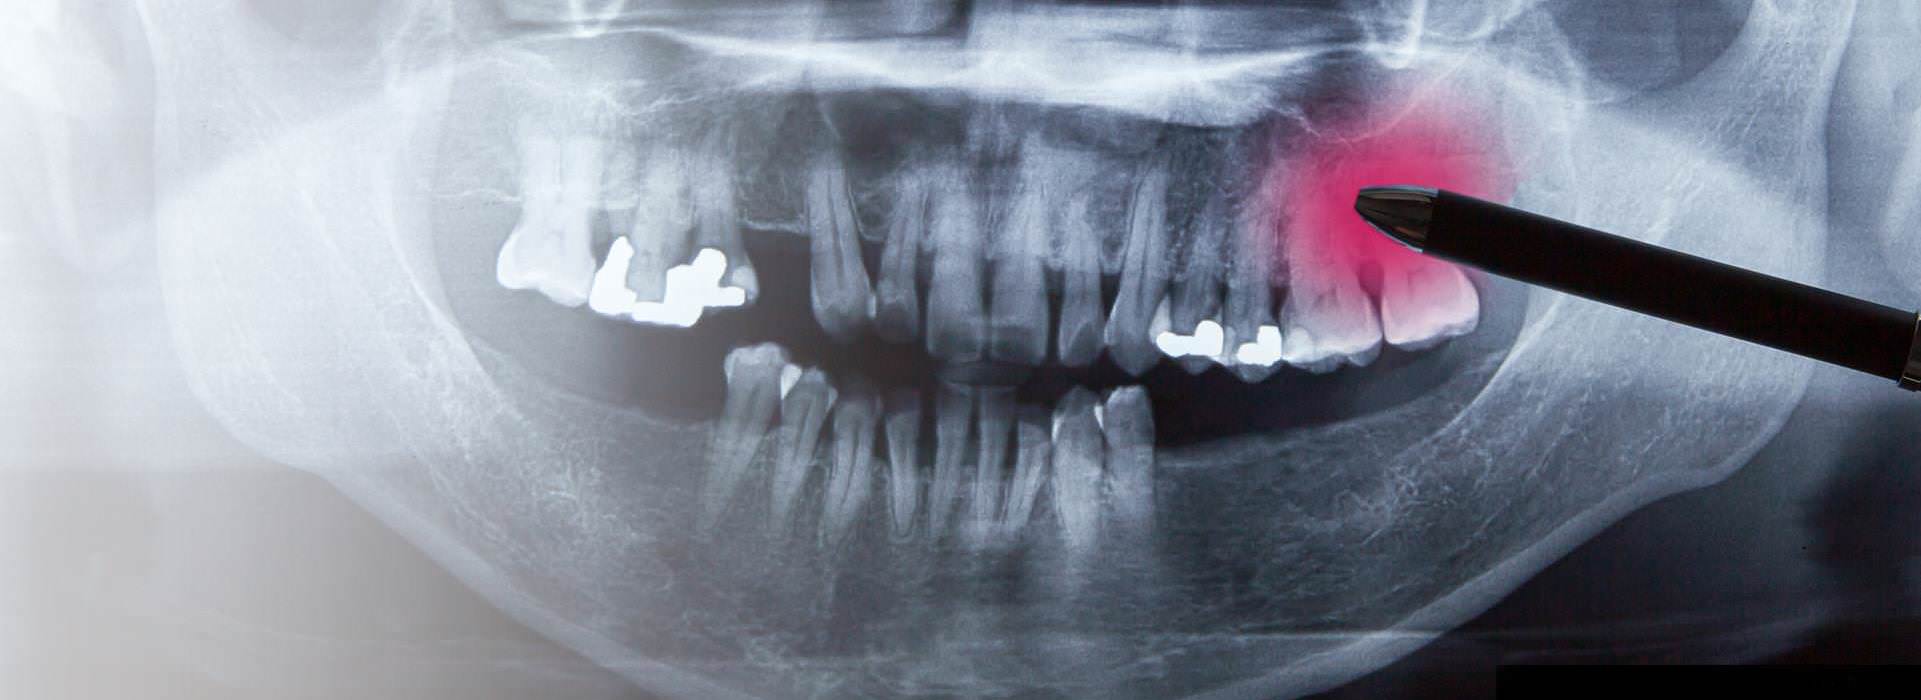 Störfeldsanierung: Röntgenaufnahme mit Zahnherd